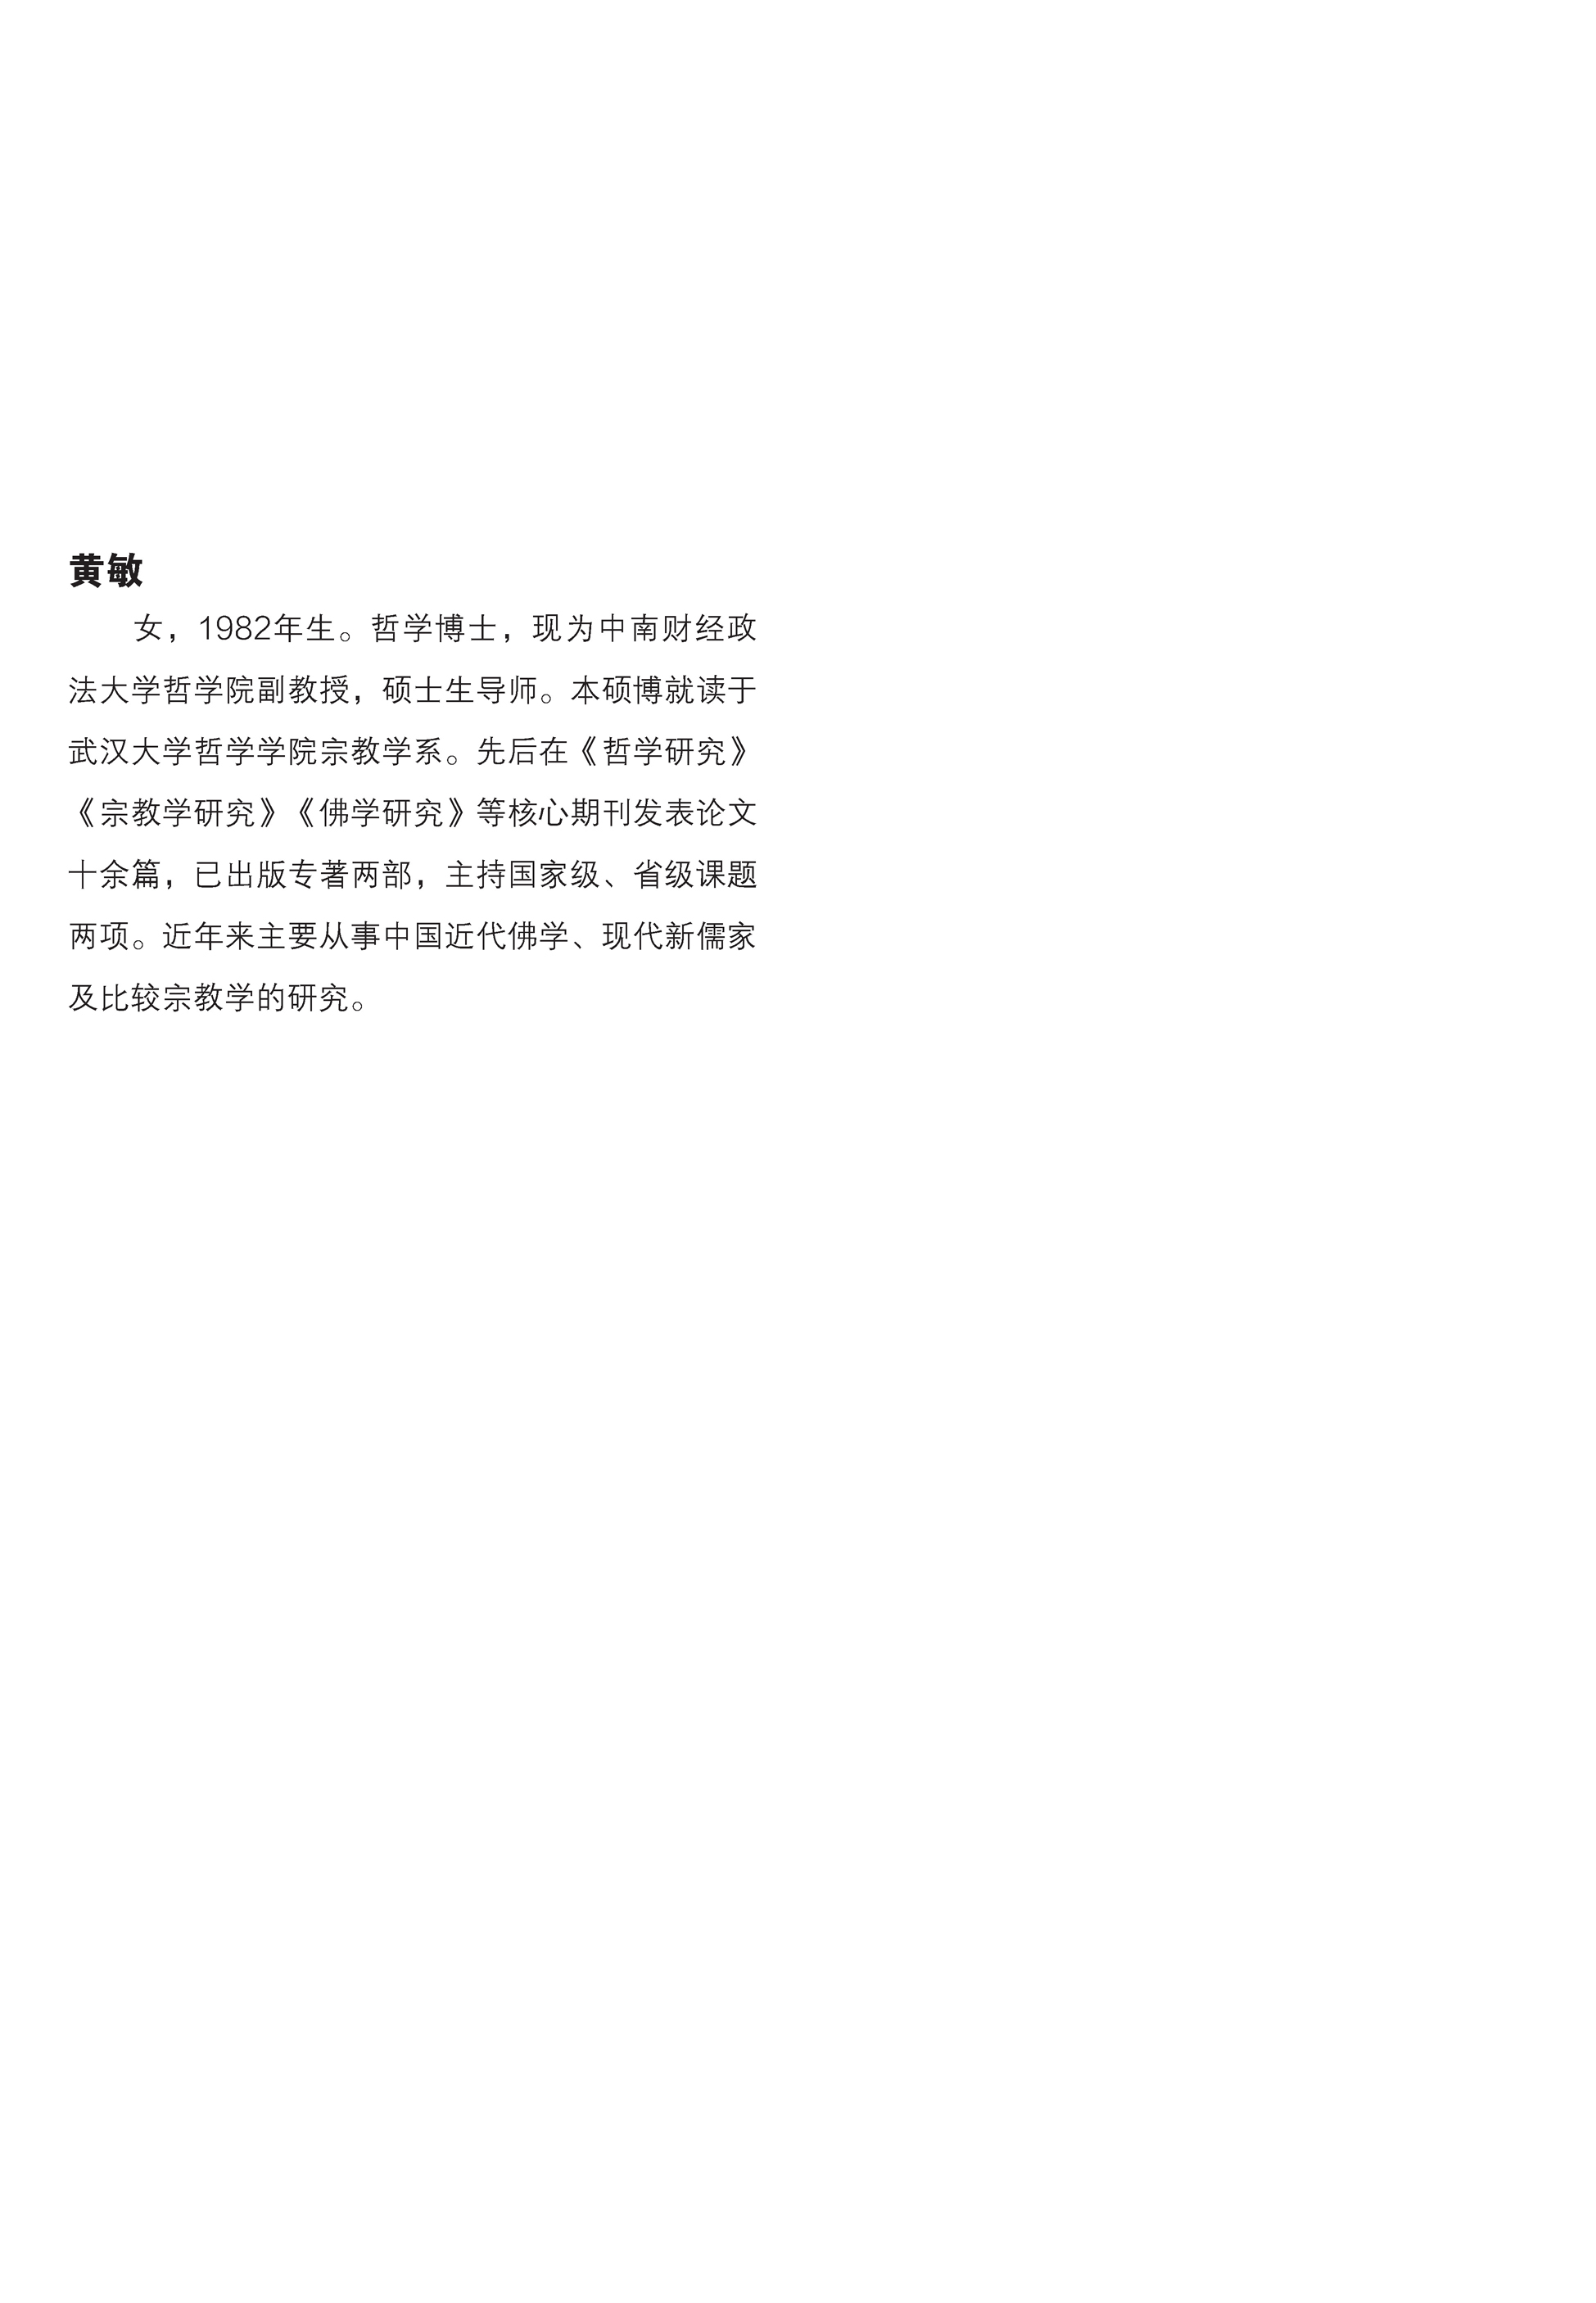 《新唯识论》儒佛会通思想研究pdf/doc/txt格式电子书下载